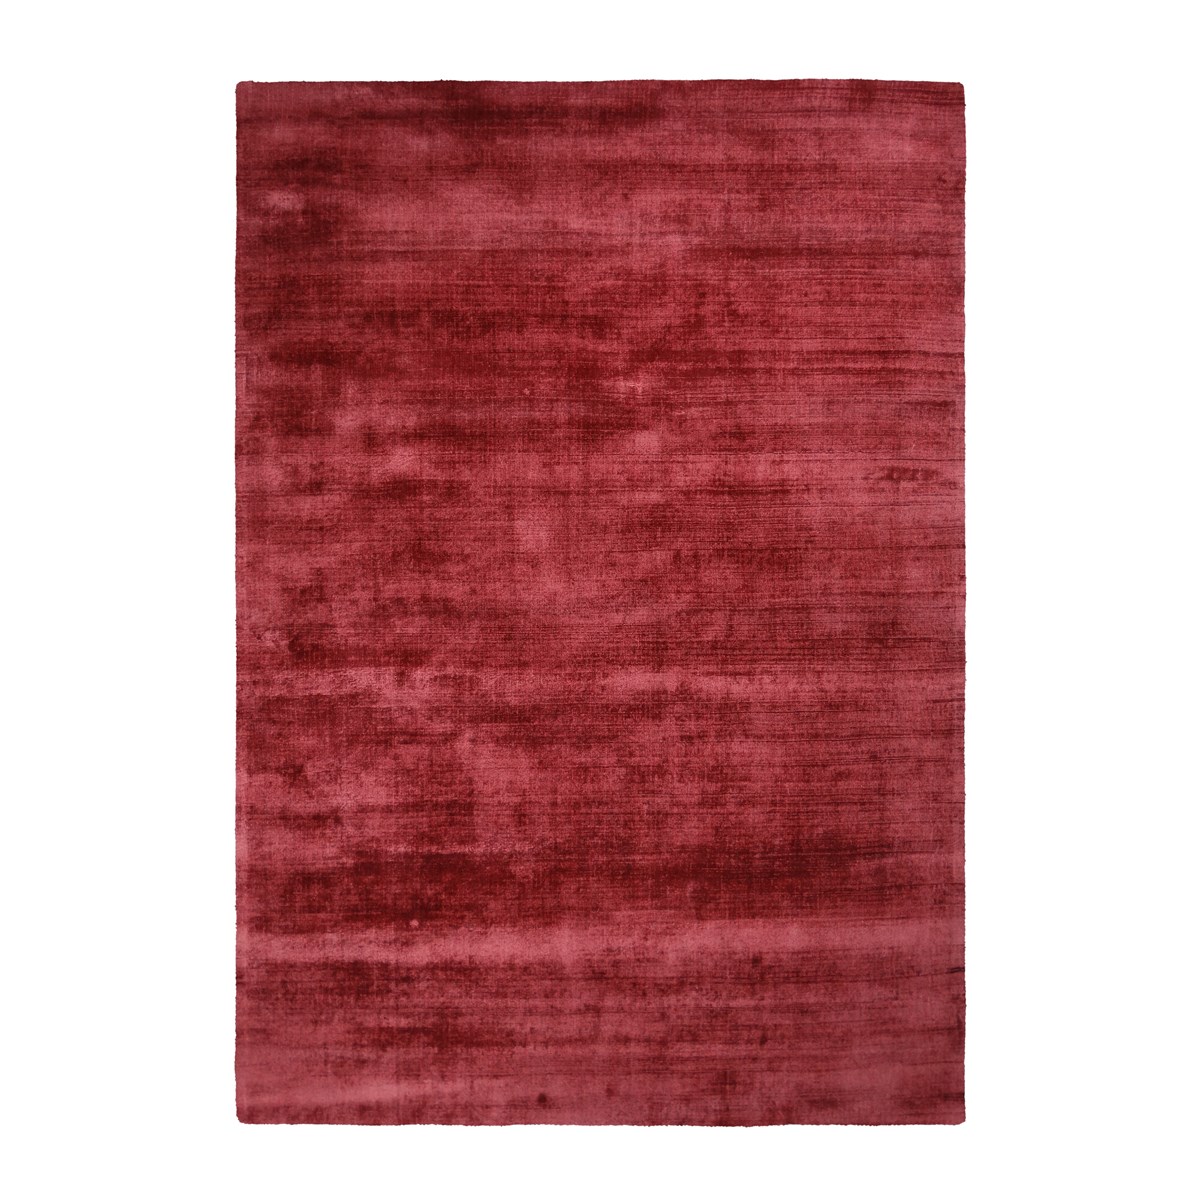 Tapis moderne en Viscose Rose rouge 160x230 cm